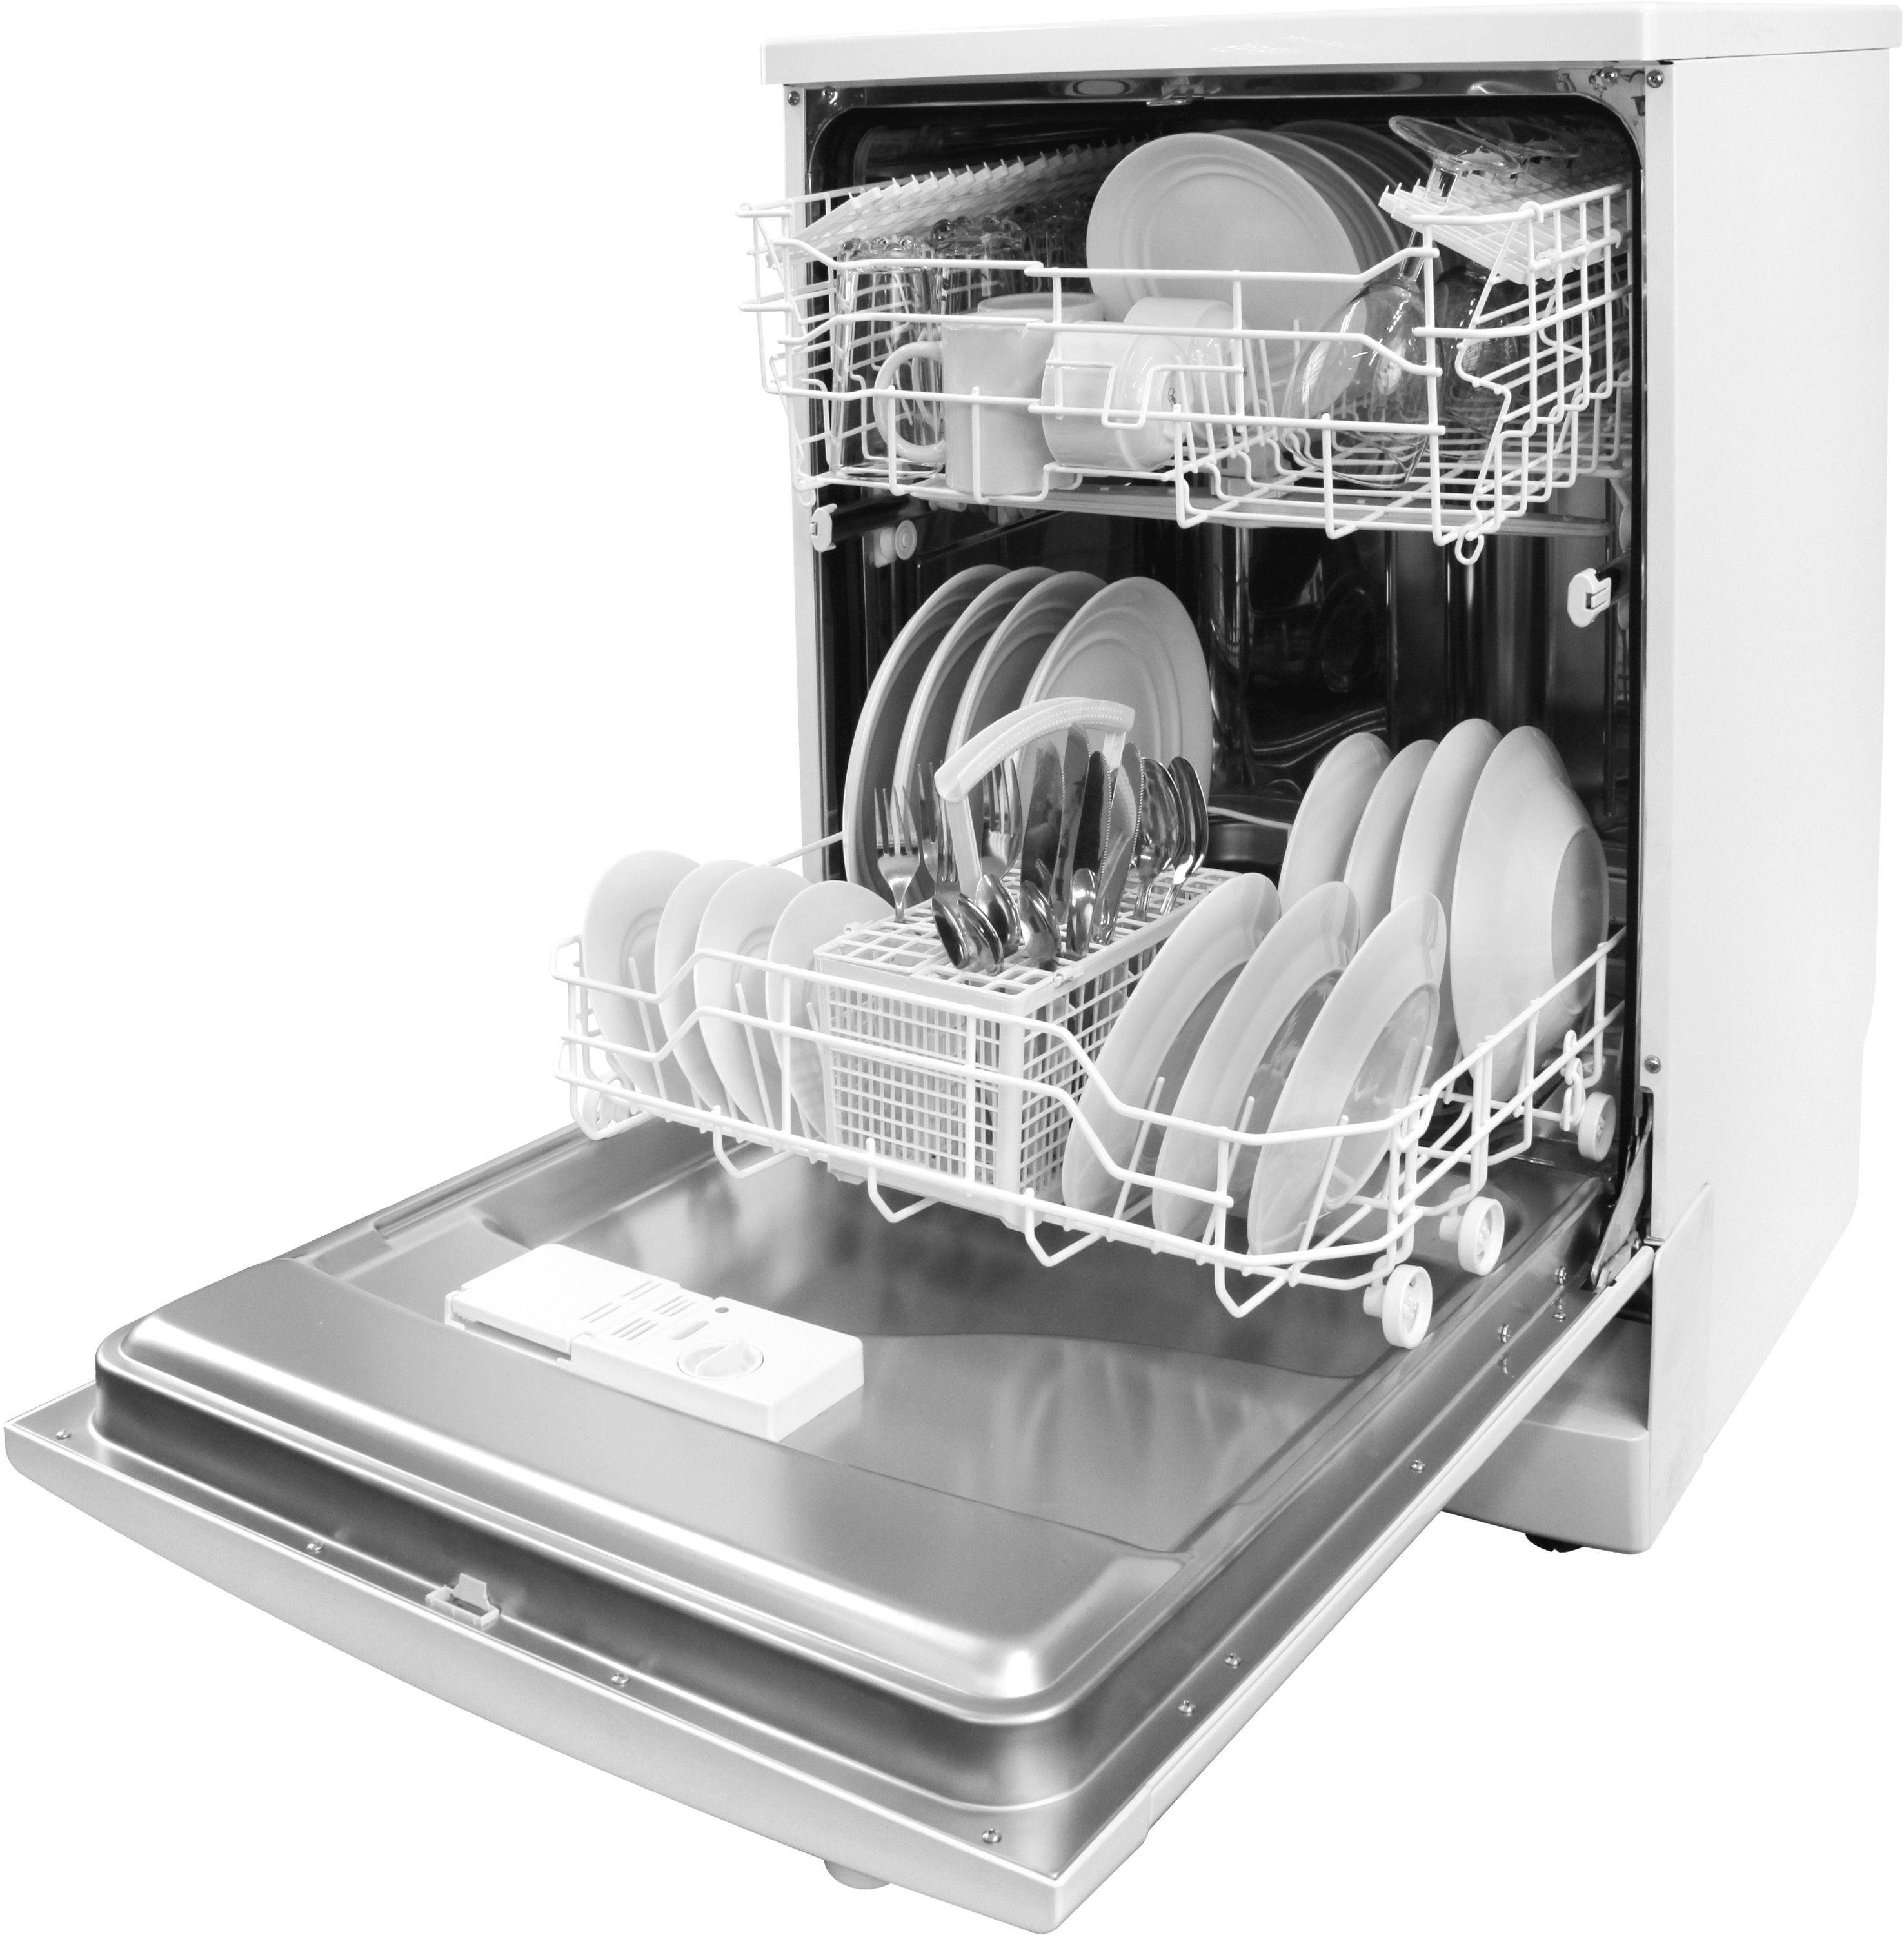 Посудомойки встраиваемые хайер. Посудомоечная машина Electrolux ESF 43020. Посудомоечная машина Whirlpool ikea 2006. Electrolux ESF 8000w. Посудомоечной машины Electrolux rd110.